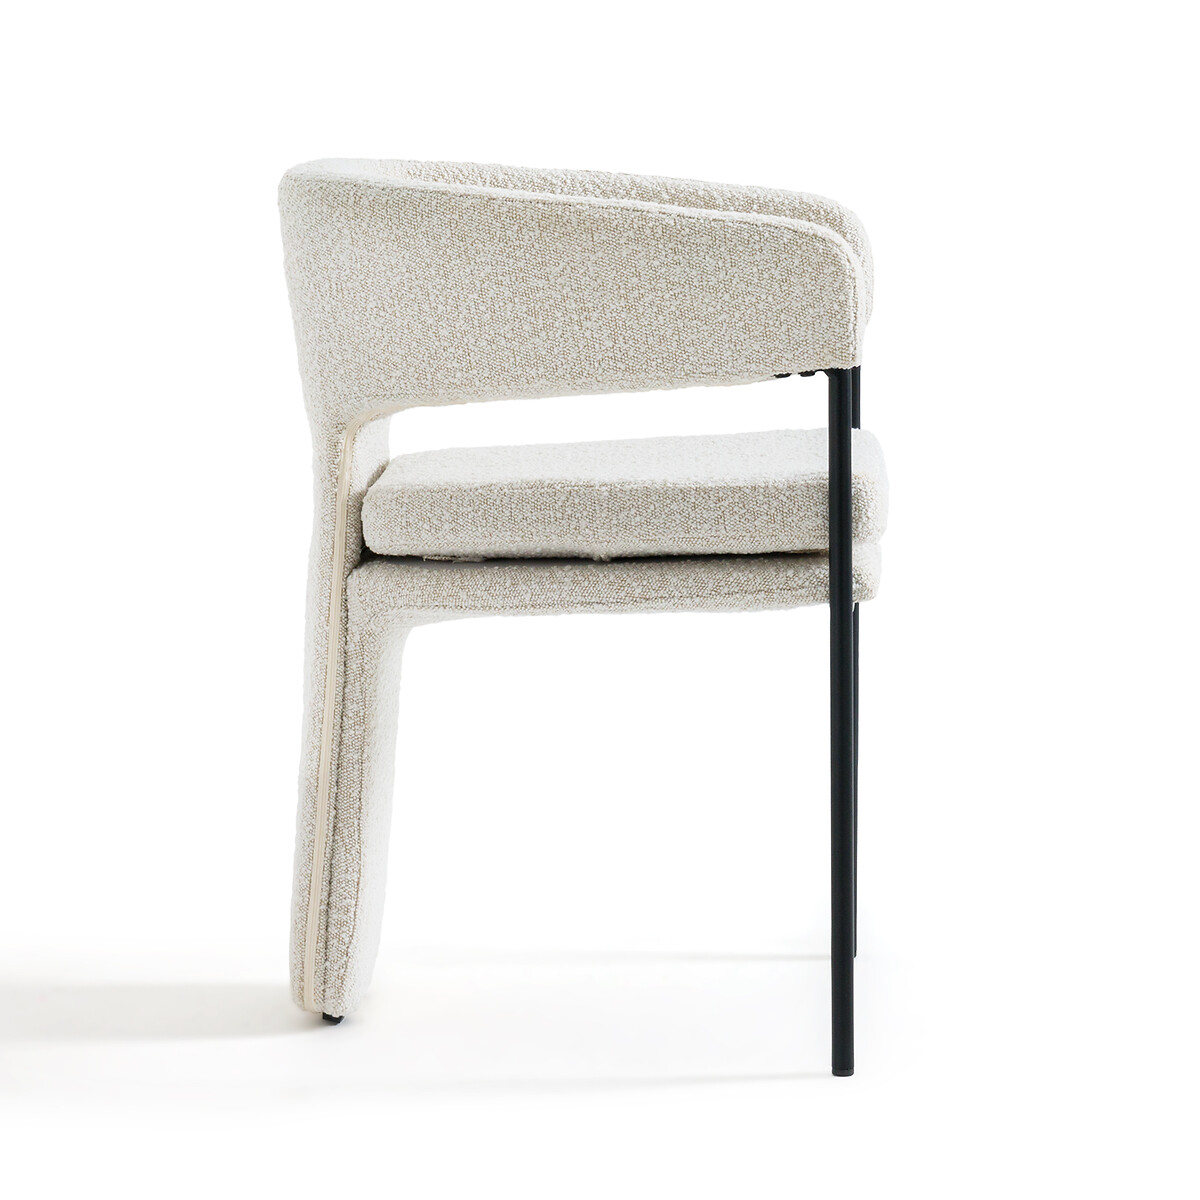 Кресло LA REDOUTE INTERIEURS Для столовой из малой пряжи Palazzo единый размер бежевый - фото 3